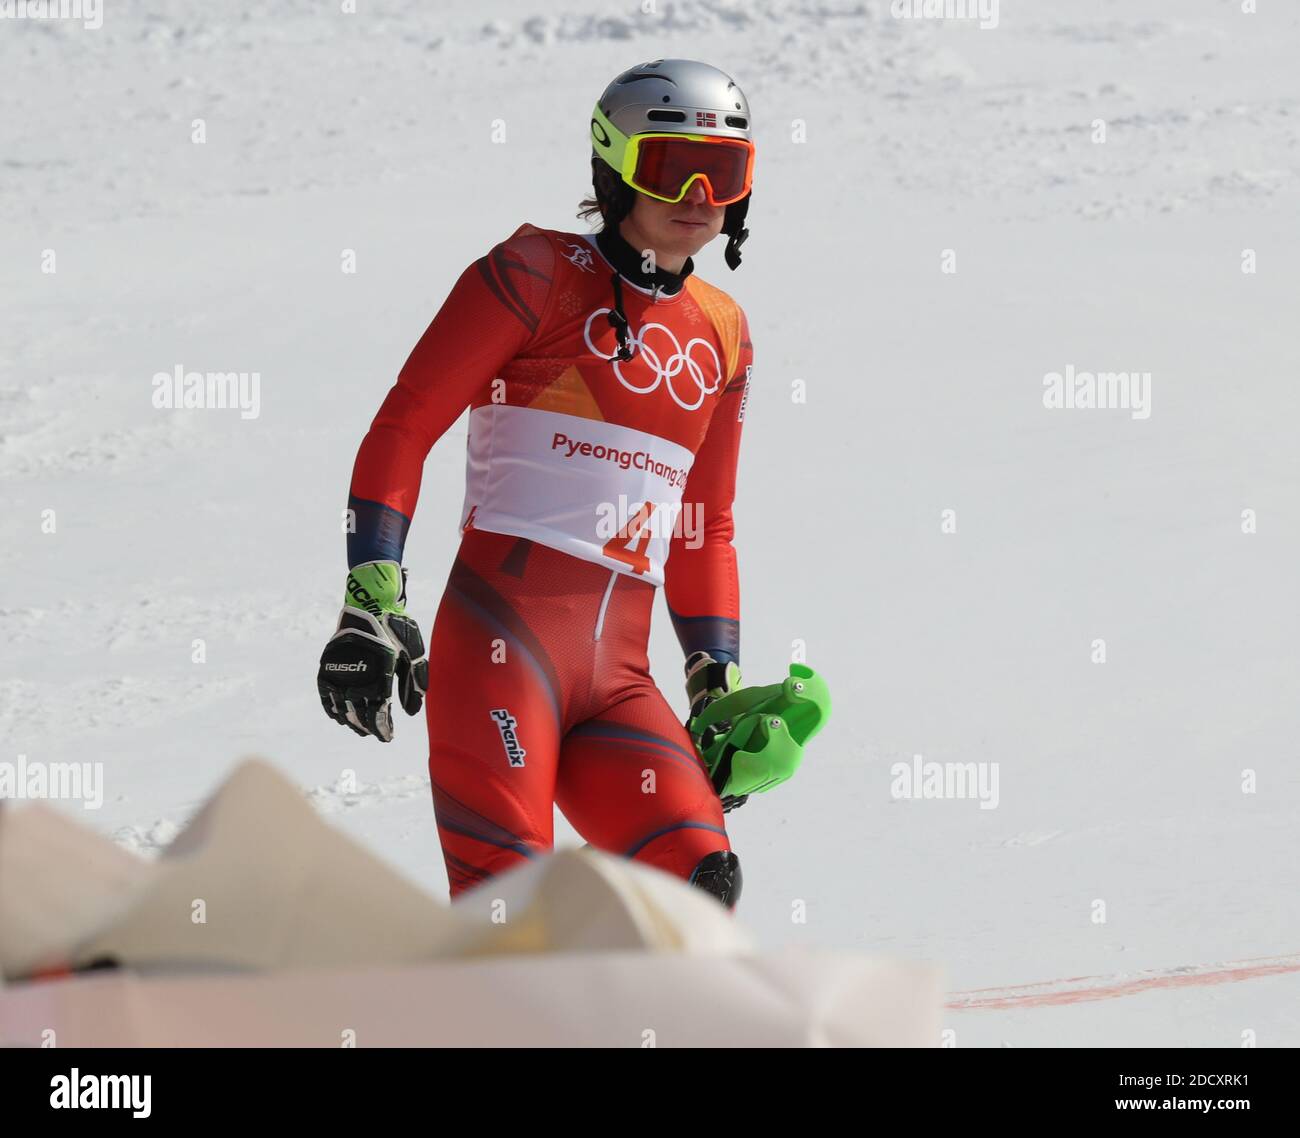 Henrik Kristoffersen de Norvège, après son erreur fatale lors de la deuxième course lors de la slalom masculin aux Jeux olympiques d'hiver de 2018 à Pyeongchang, Corée du Sud, le 22 février 2018. Photo de Guiliano Bevilacqua/ABACAPRESS.COM Banque D'Images